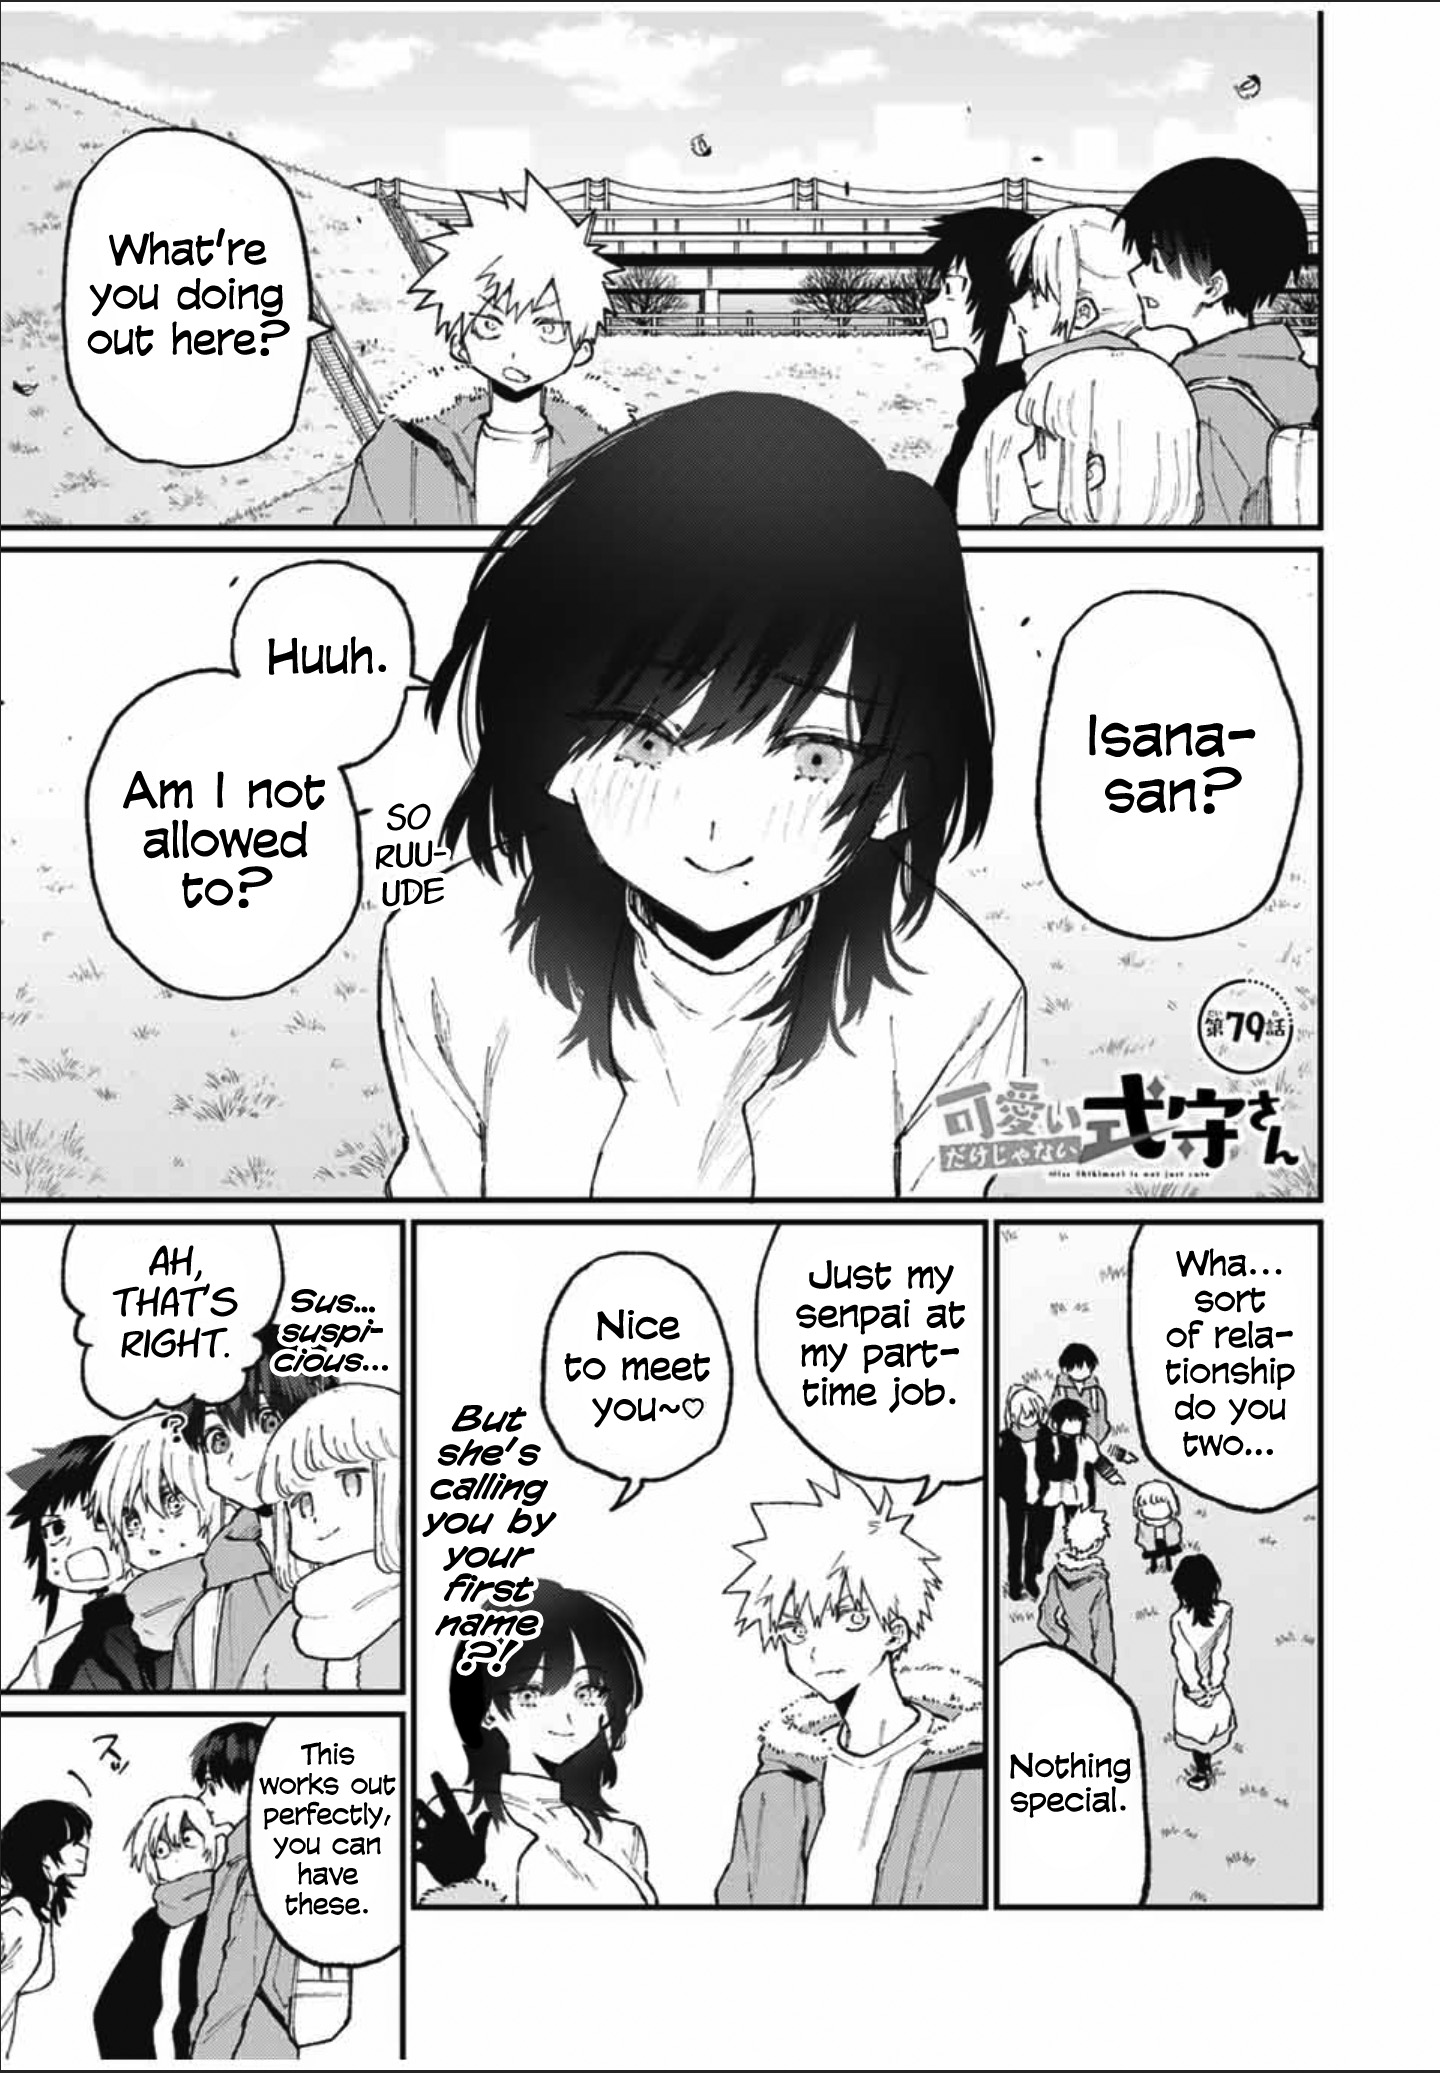 Shikimori's Not Just A Cutie - Page 1